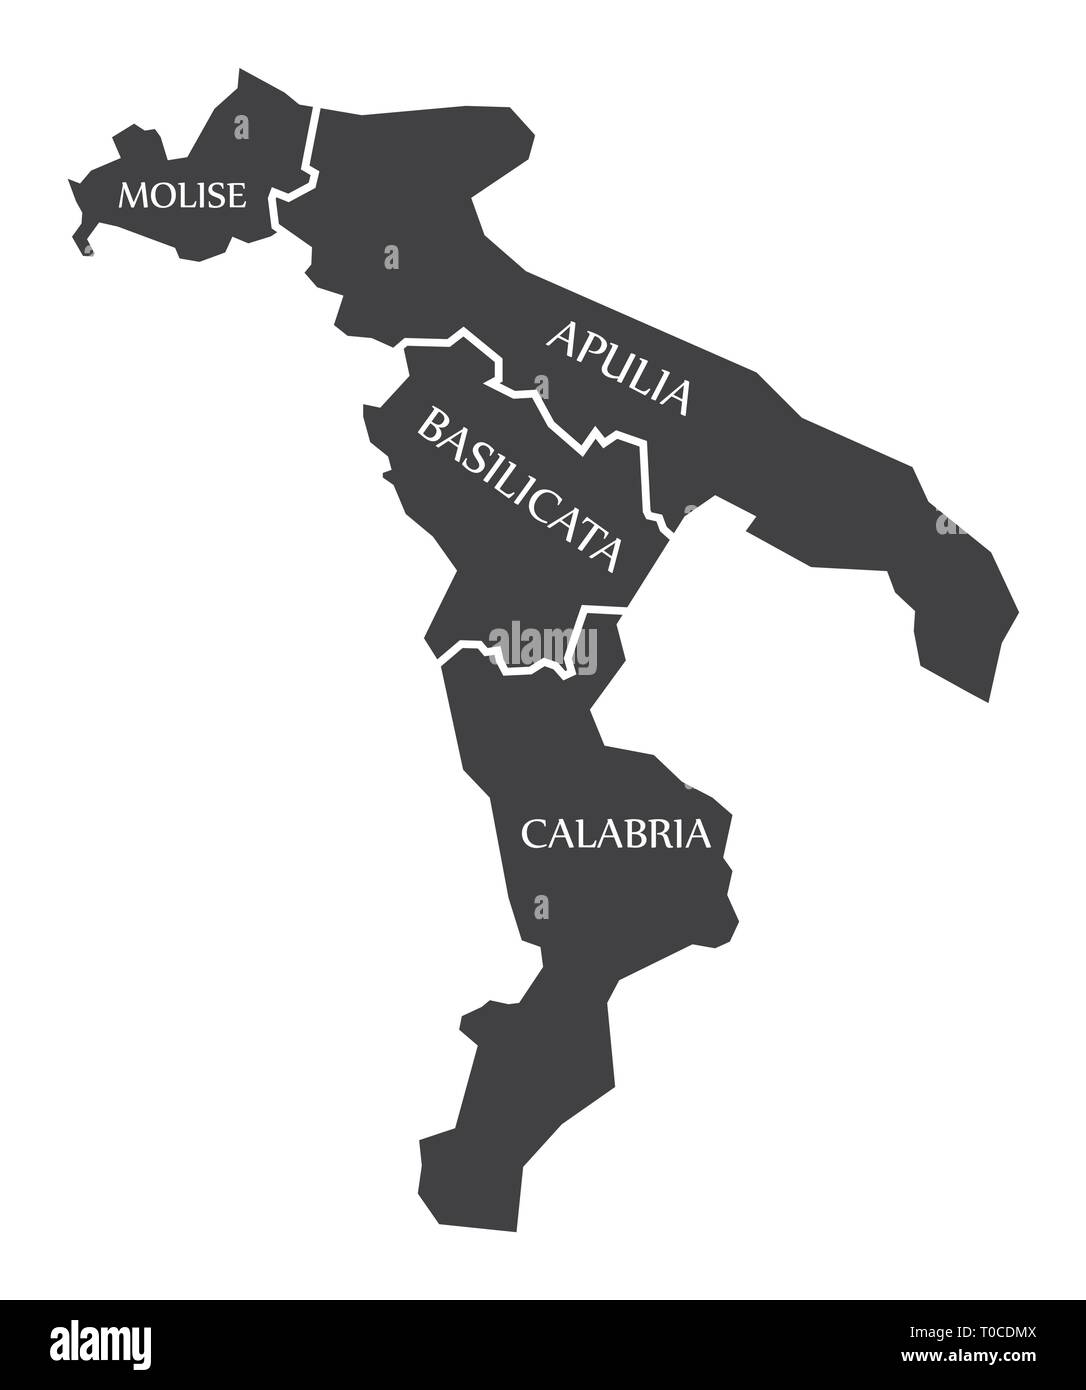 Molise - Puglia - Basilicata - Calabria Mappa Italia Illustrazione Vettoriale